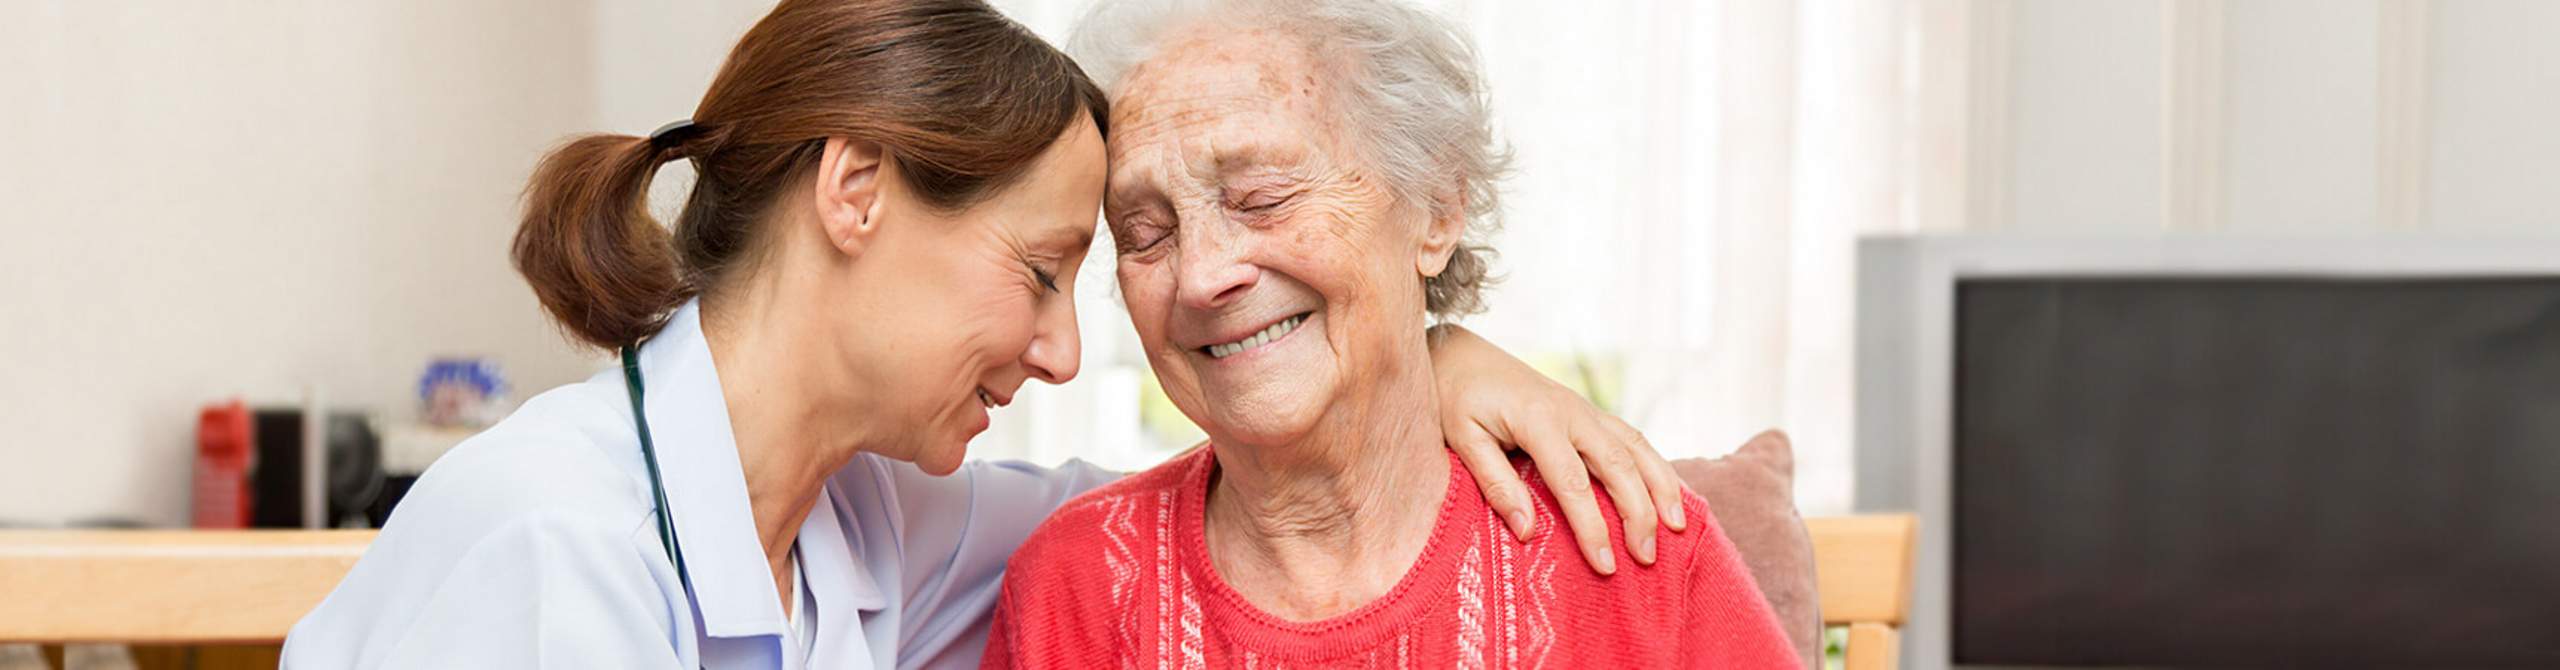 Pflegerin umarmt ältere Frau.